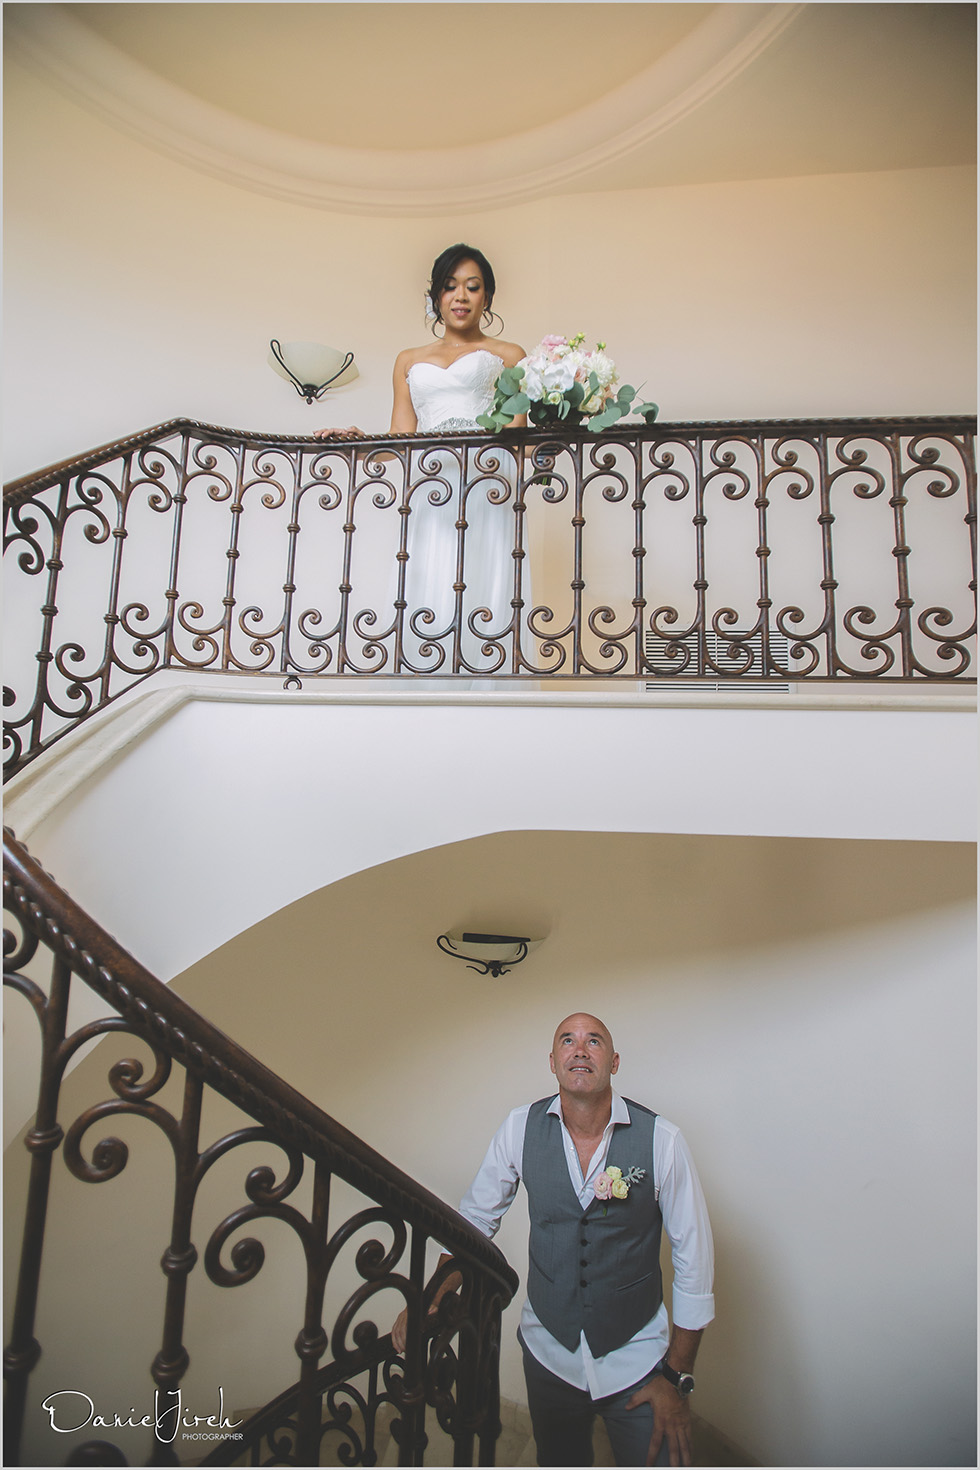 Los Cabos Destination Wedding: A Baja Romance Weddings by Karla Casillas at Villa Marcela at Pedregal